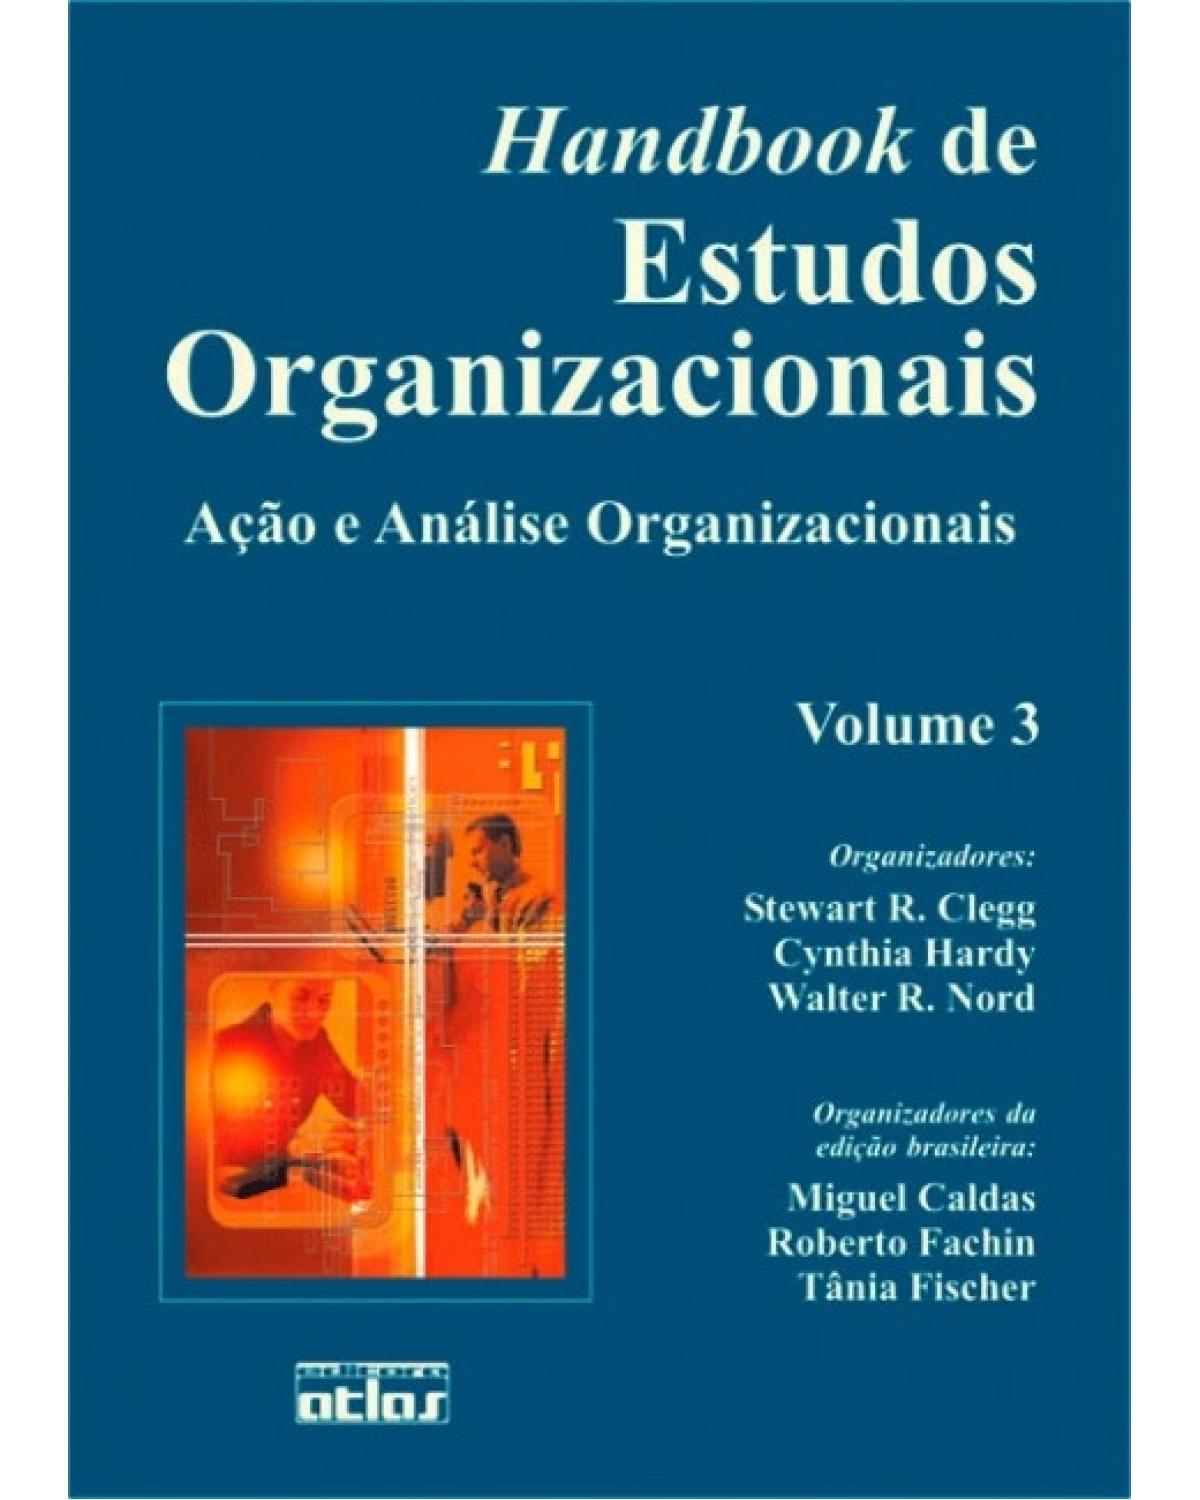 Handbook de estudos organizacionais - Volume 3: Ação e análise organizacionais - 1ª Edição | 2004